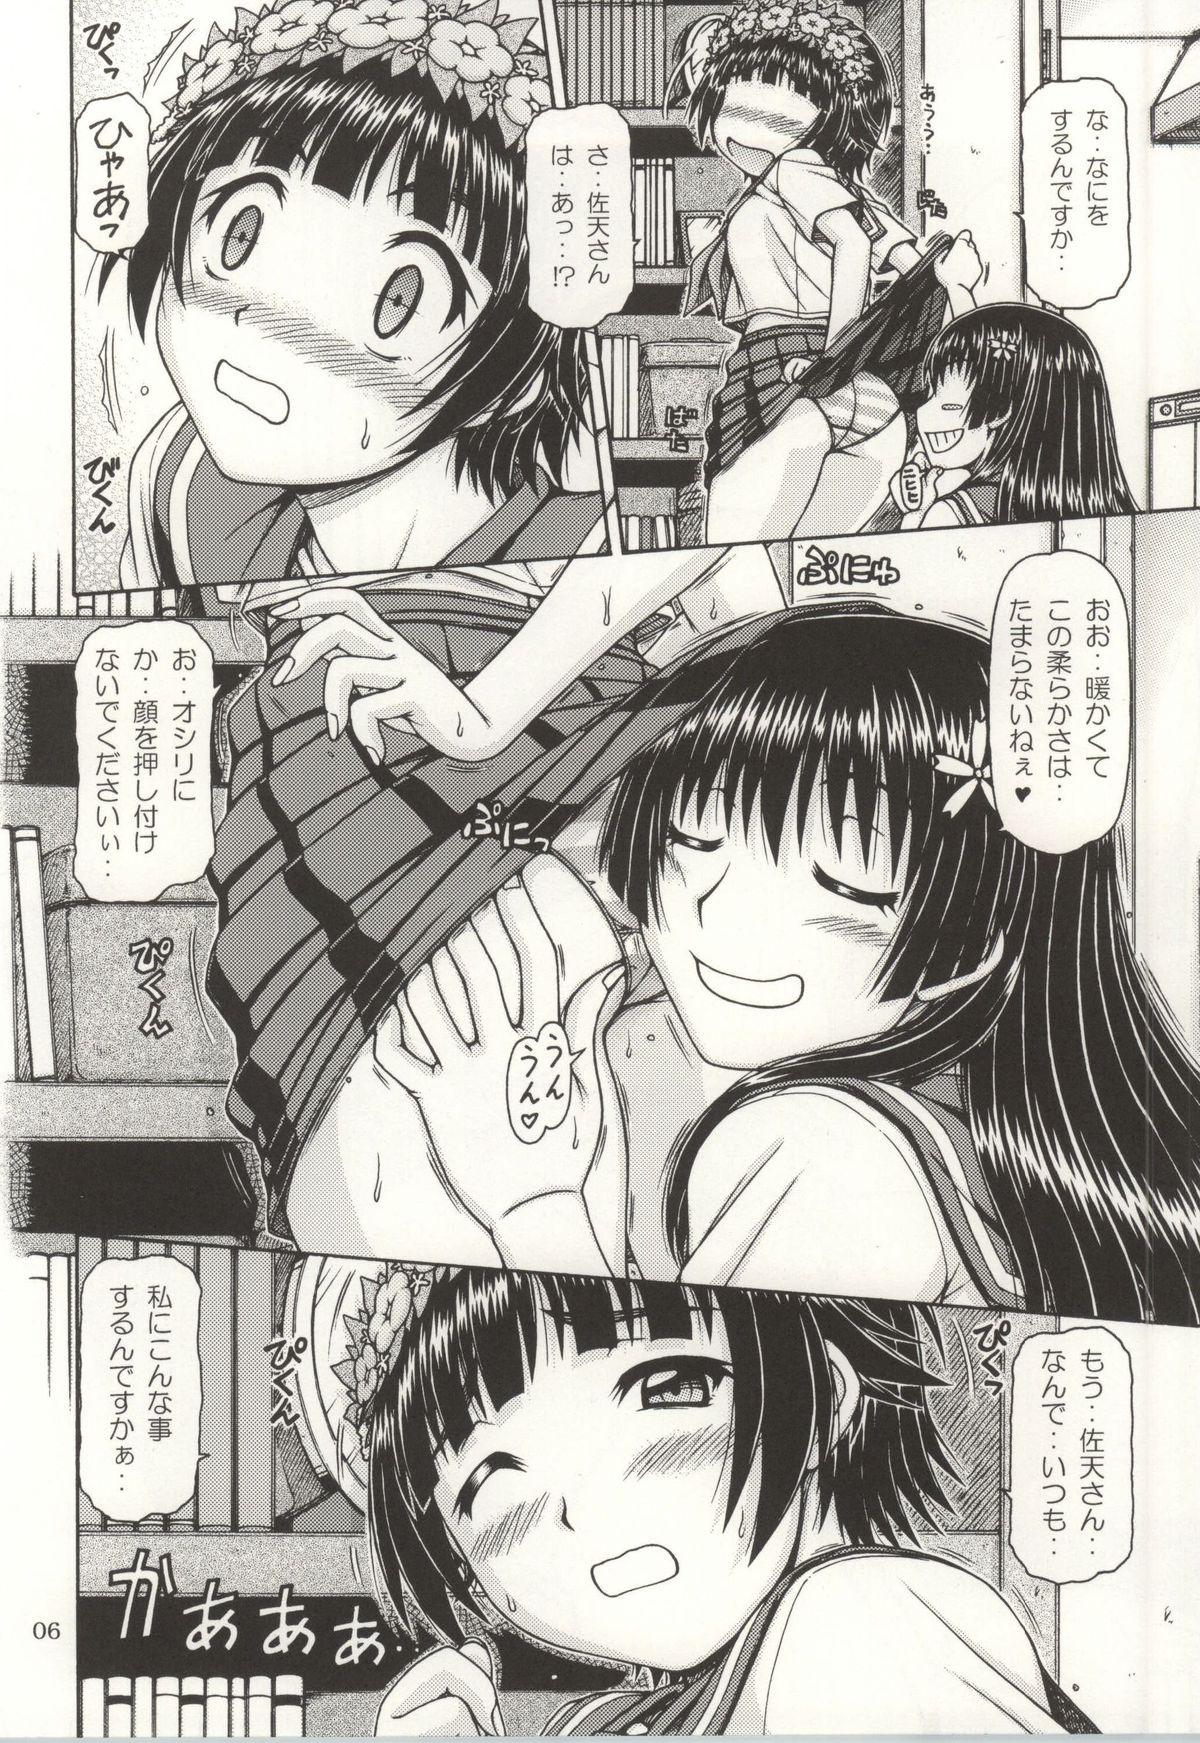 Culazo ONE-SEVEN+ Vol.01 - Toaru kagaku no railgun Toaru majutsu no index Blondes - Page 4